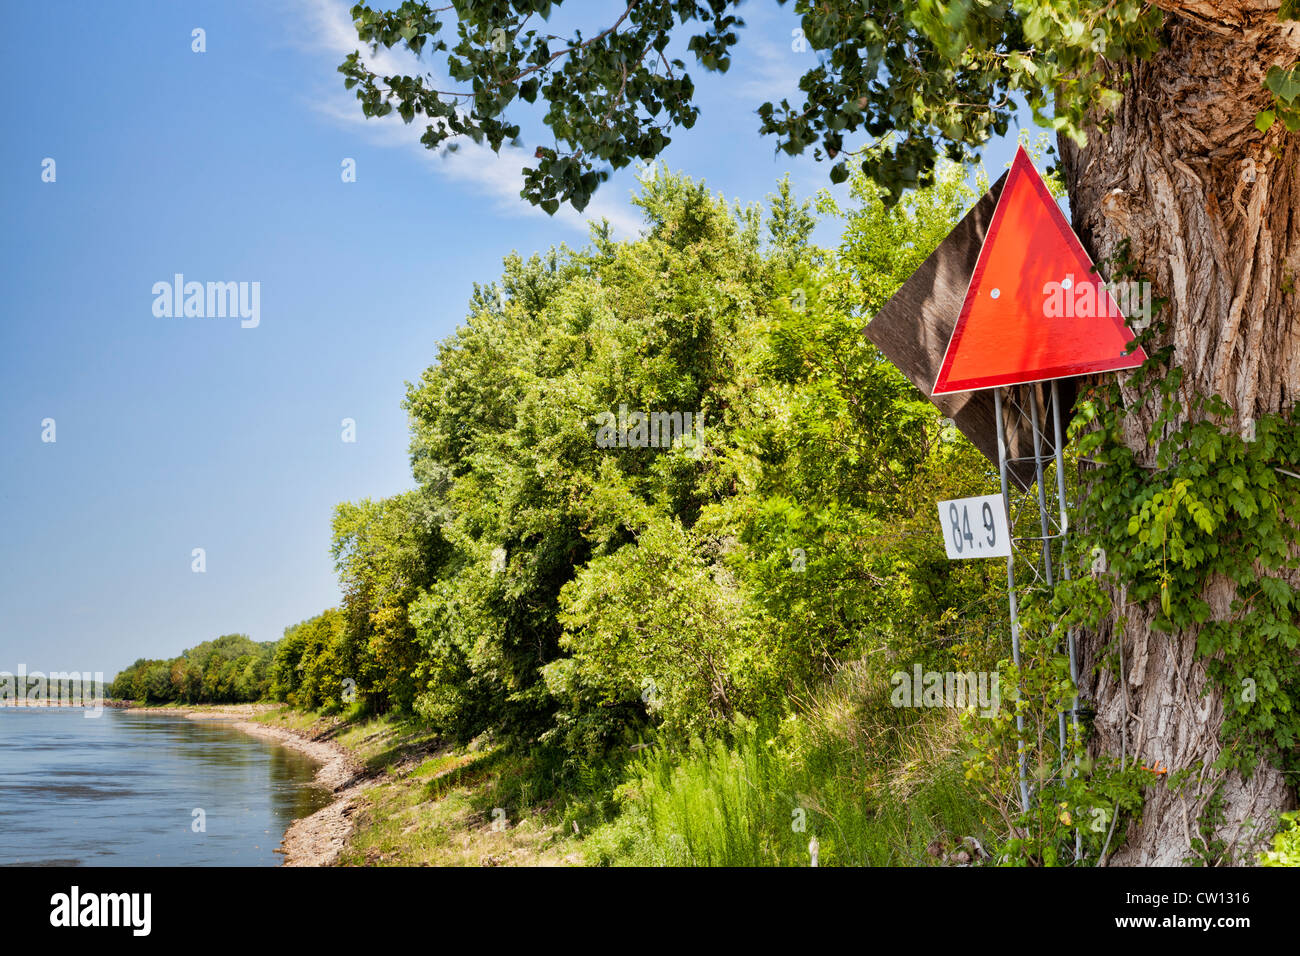 La navigation et le kilométrage signe rouge sur la rive gauche de la rivière Missouri Banque D'Images